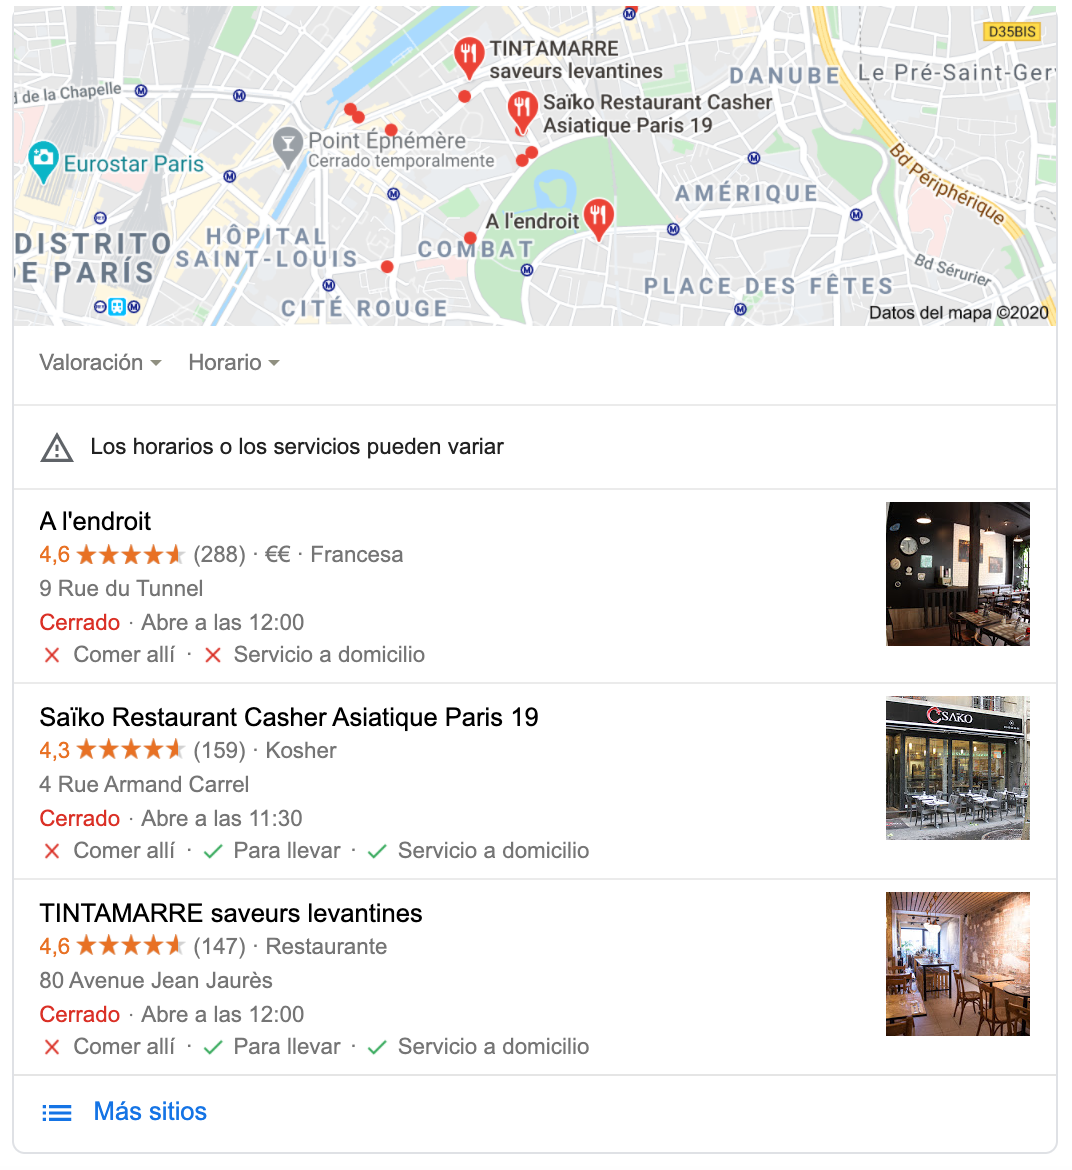 resultado de búsqueda google con restaurantes implantando los nuevos atributos click & collect